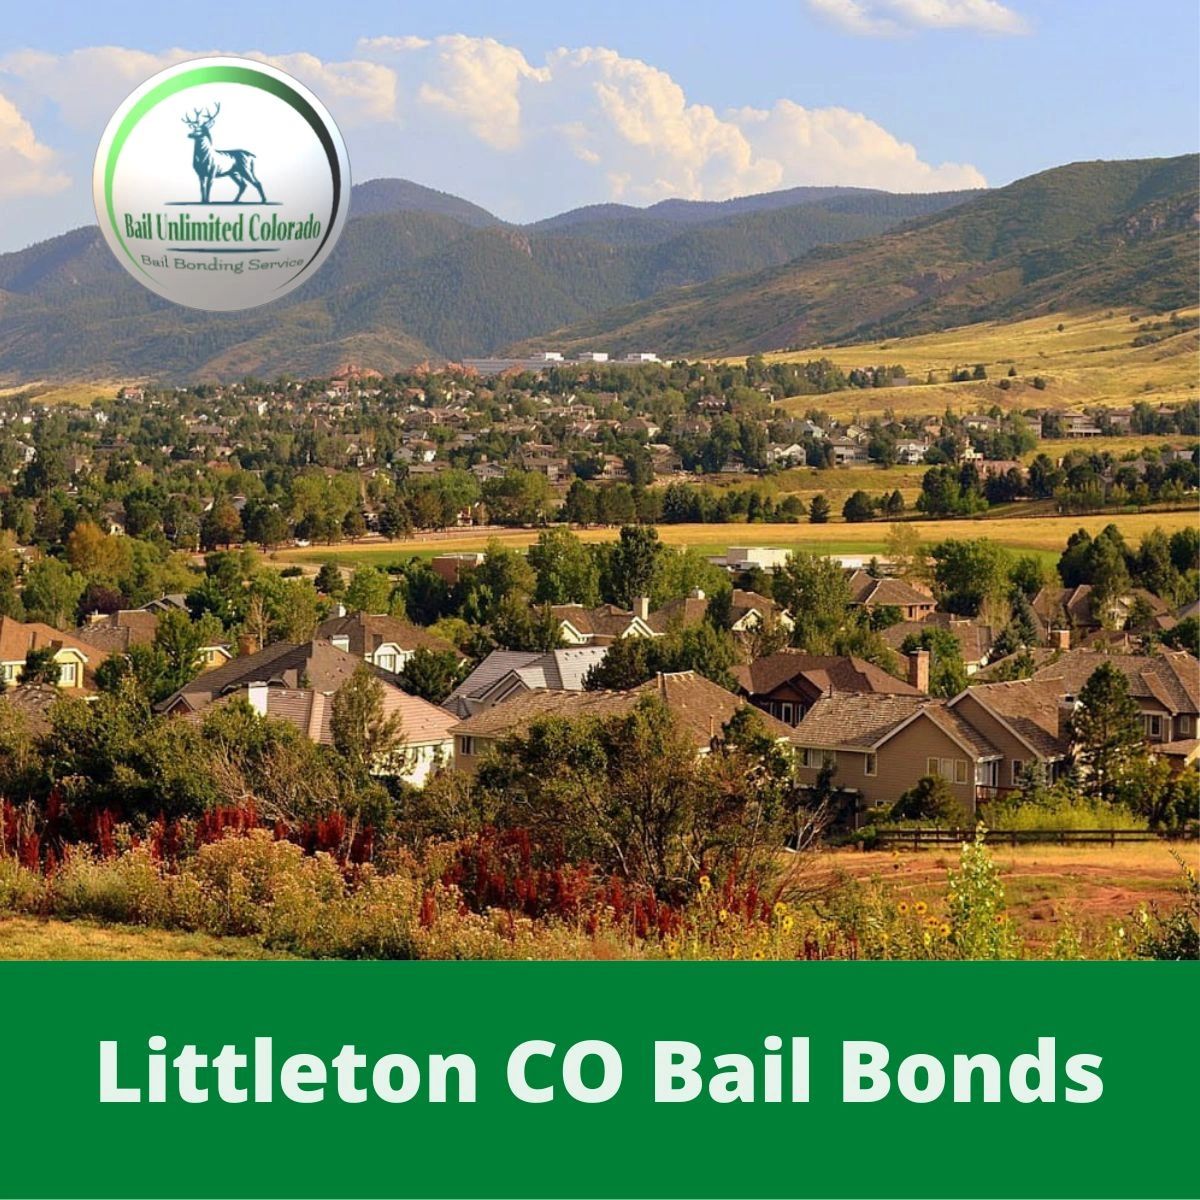 Littleton CO Bail Bonds  LOGO Bail Unlimited Colorado Bail Bonding Service in Arapahoe County